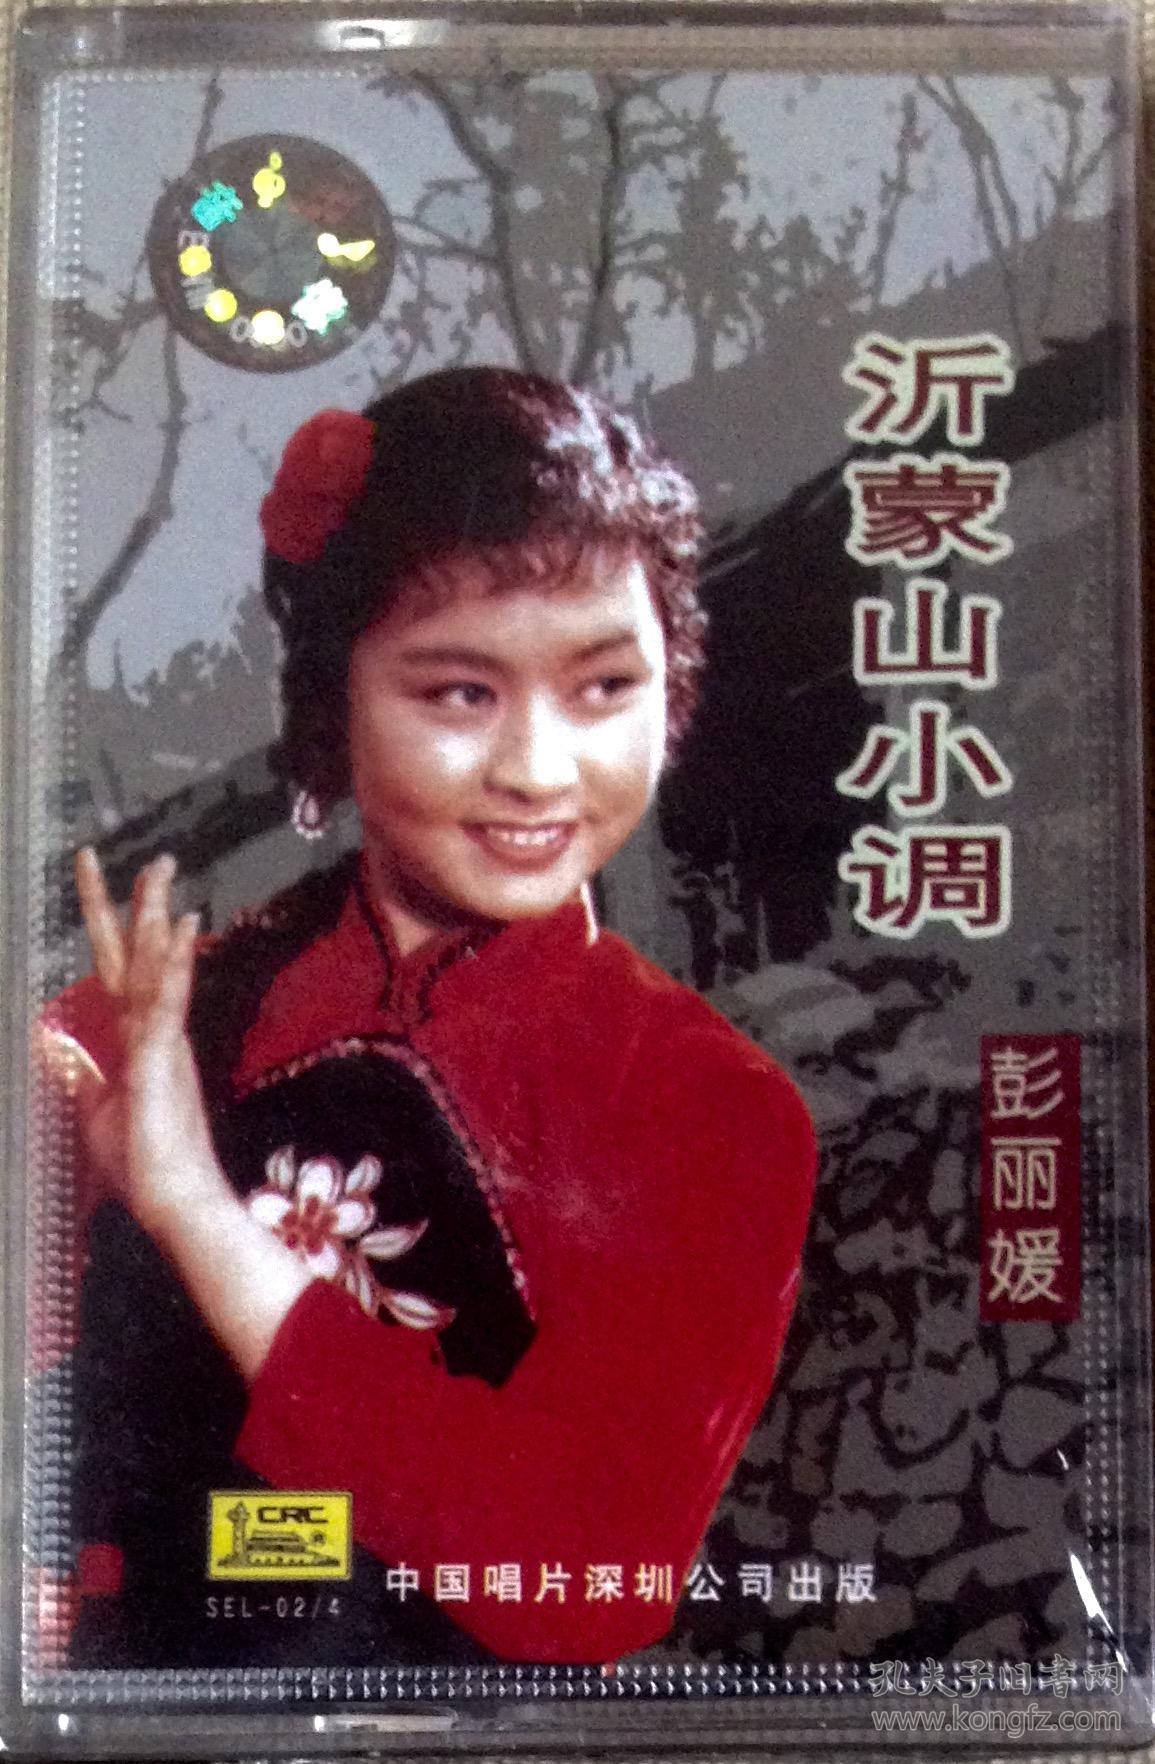 中唱正版全新磁带: 沂蒙山小调 彭丽媛1983进京